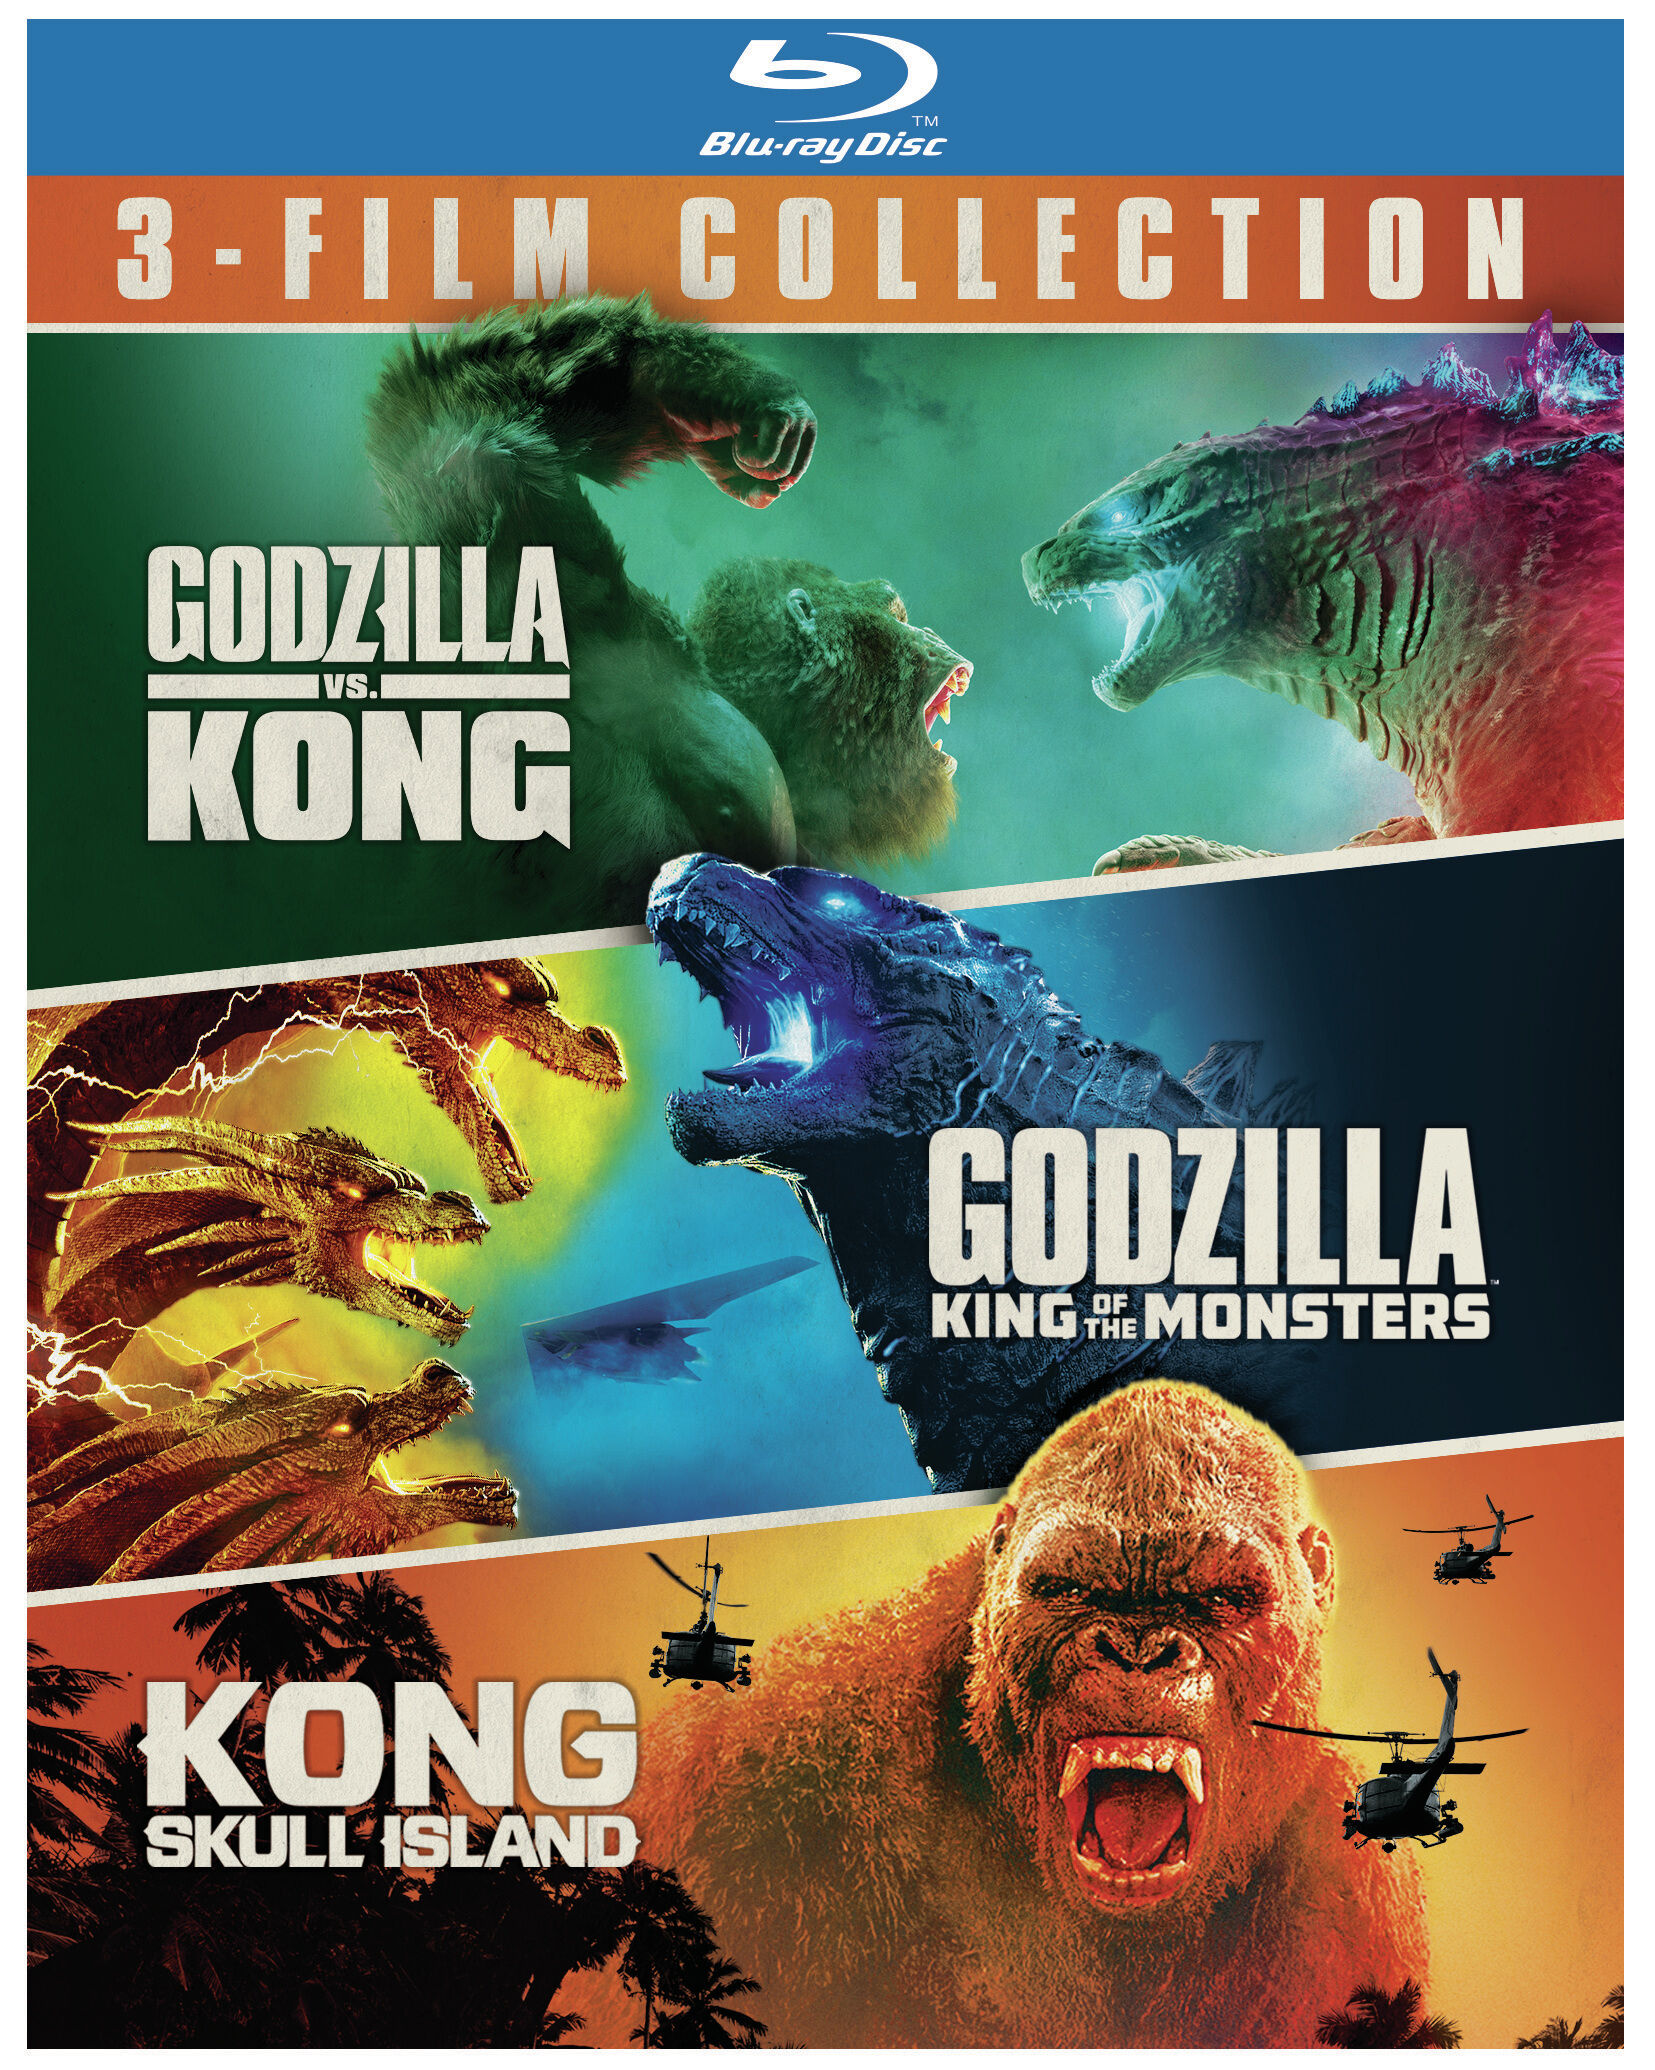 Godzilla/Godzilla: King Of The Monsters/Kong: Skull Island (Box Set) - Blu-ray [ 2017 ]  - Sci Fi Movies On Blu-ray - Movies On GRUV